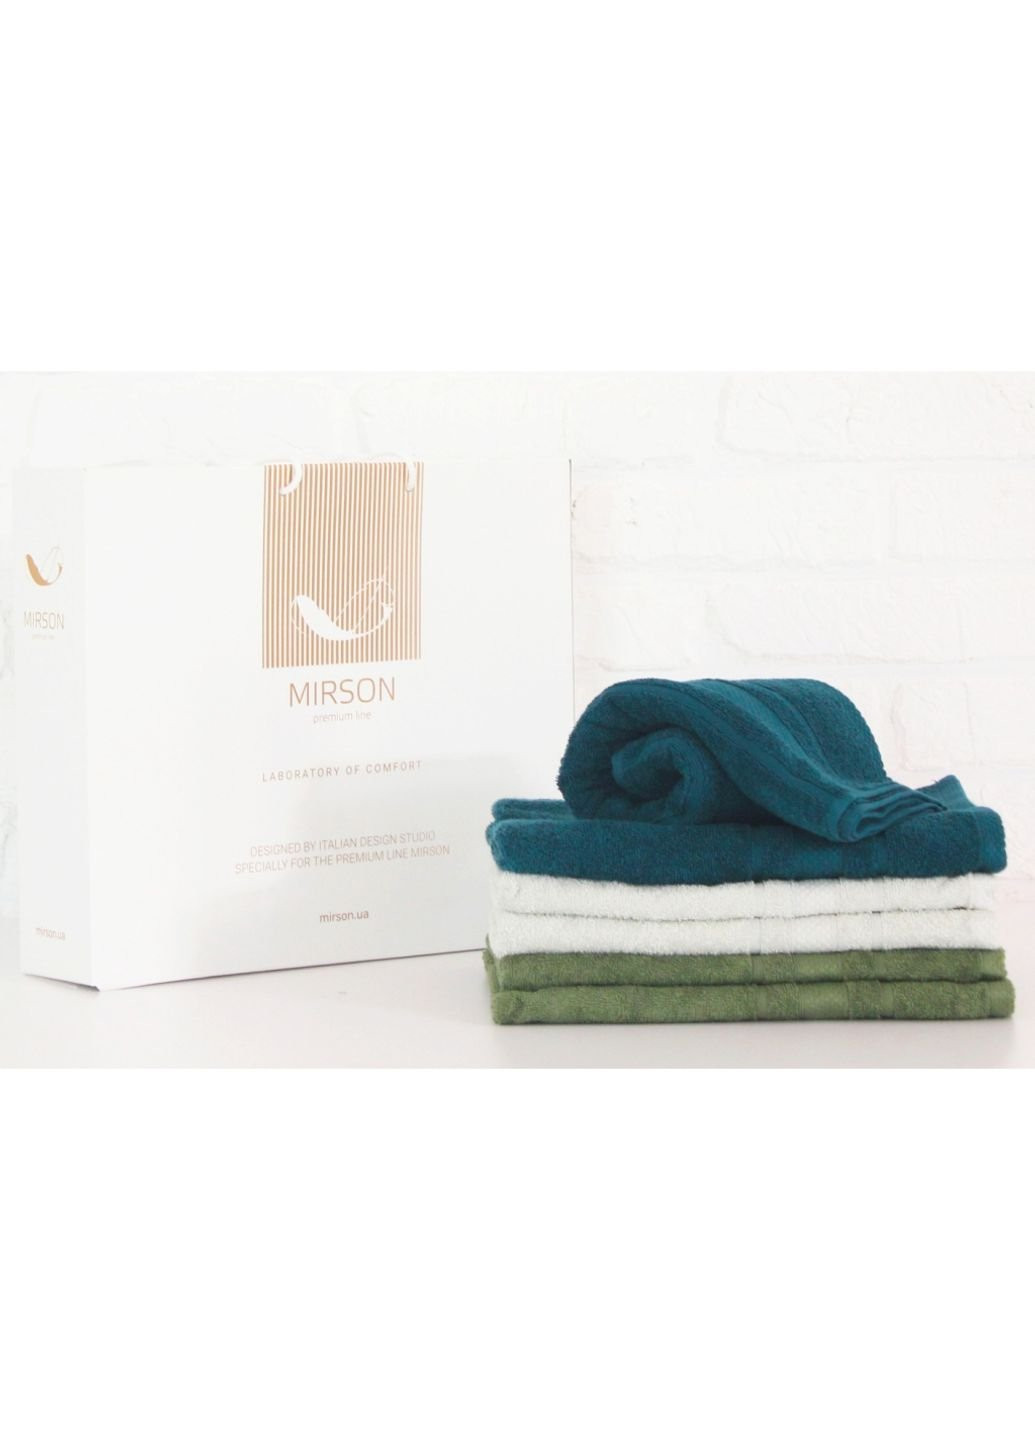 Mirson полотенце набор банных №5095 elite softnes judicious 70х140 6 шт (2200003525694) комбинированный производство - Украина